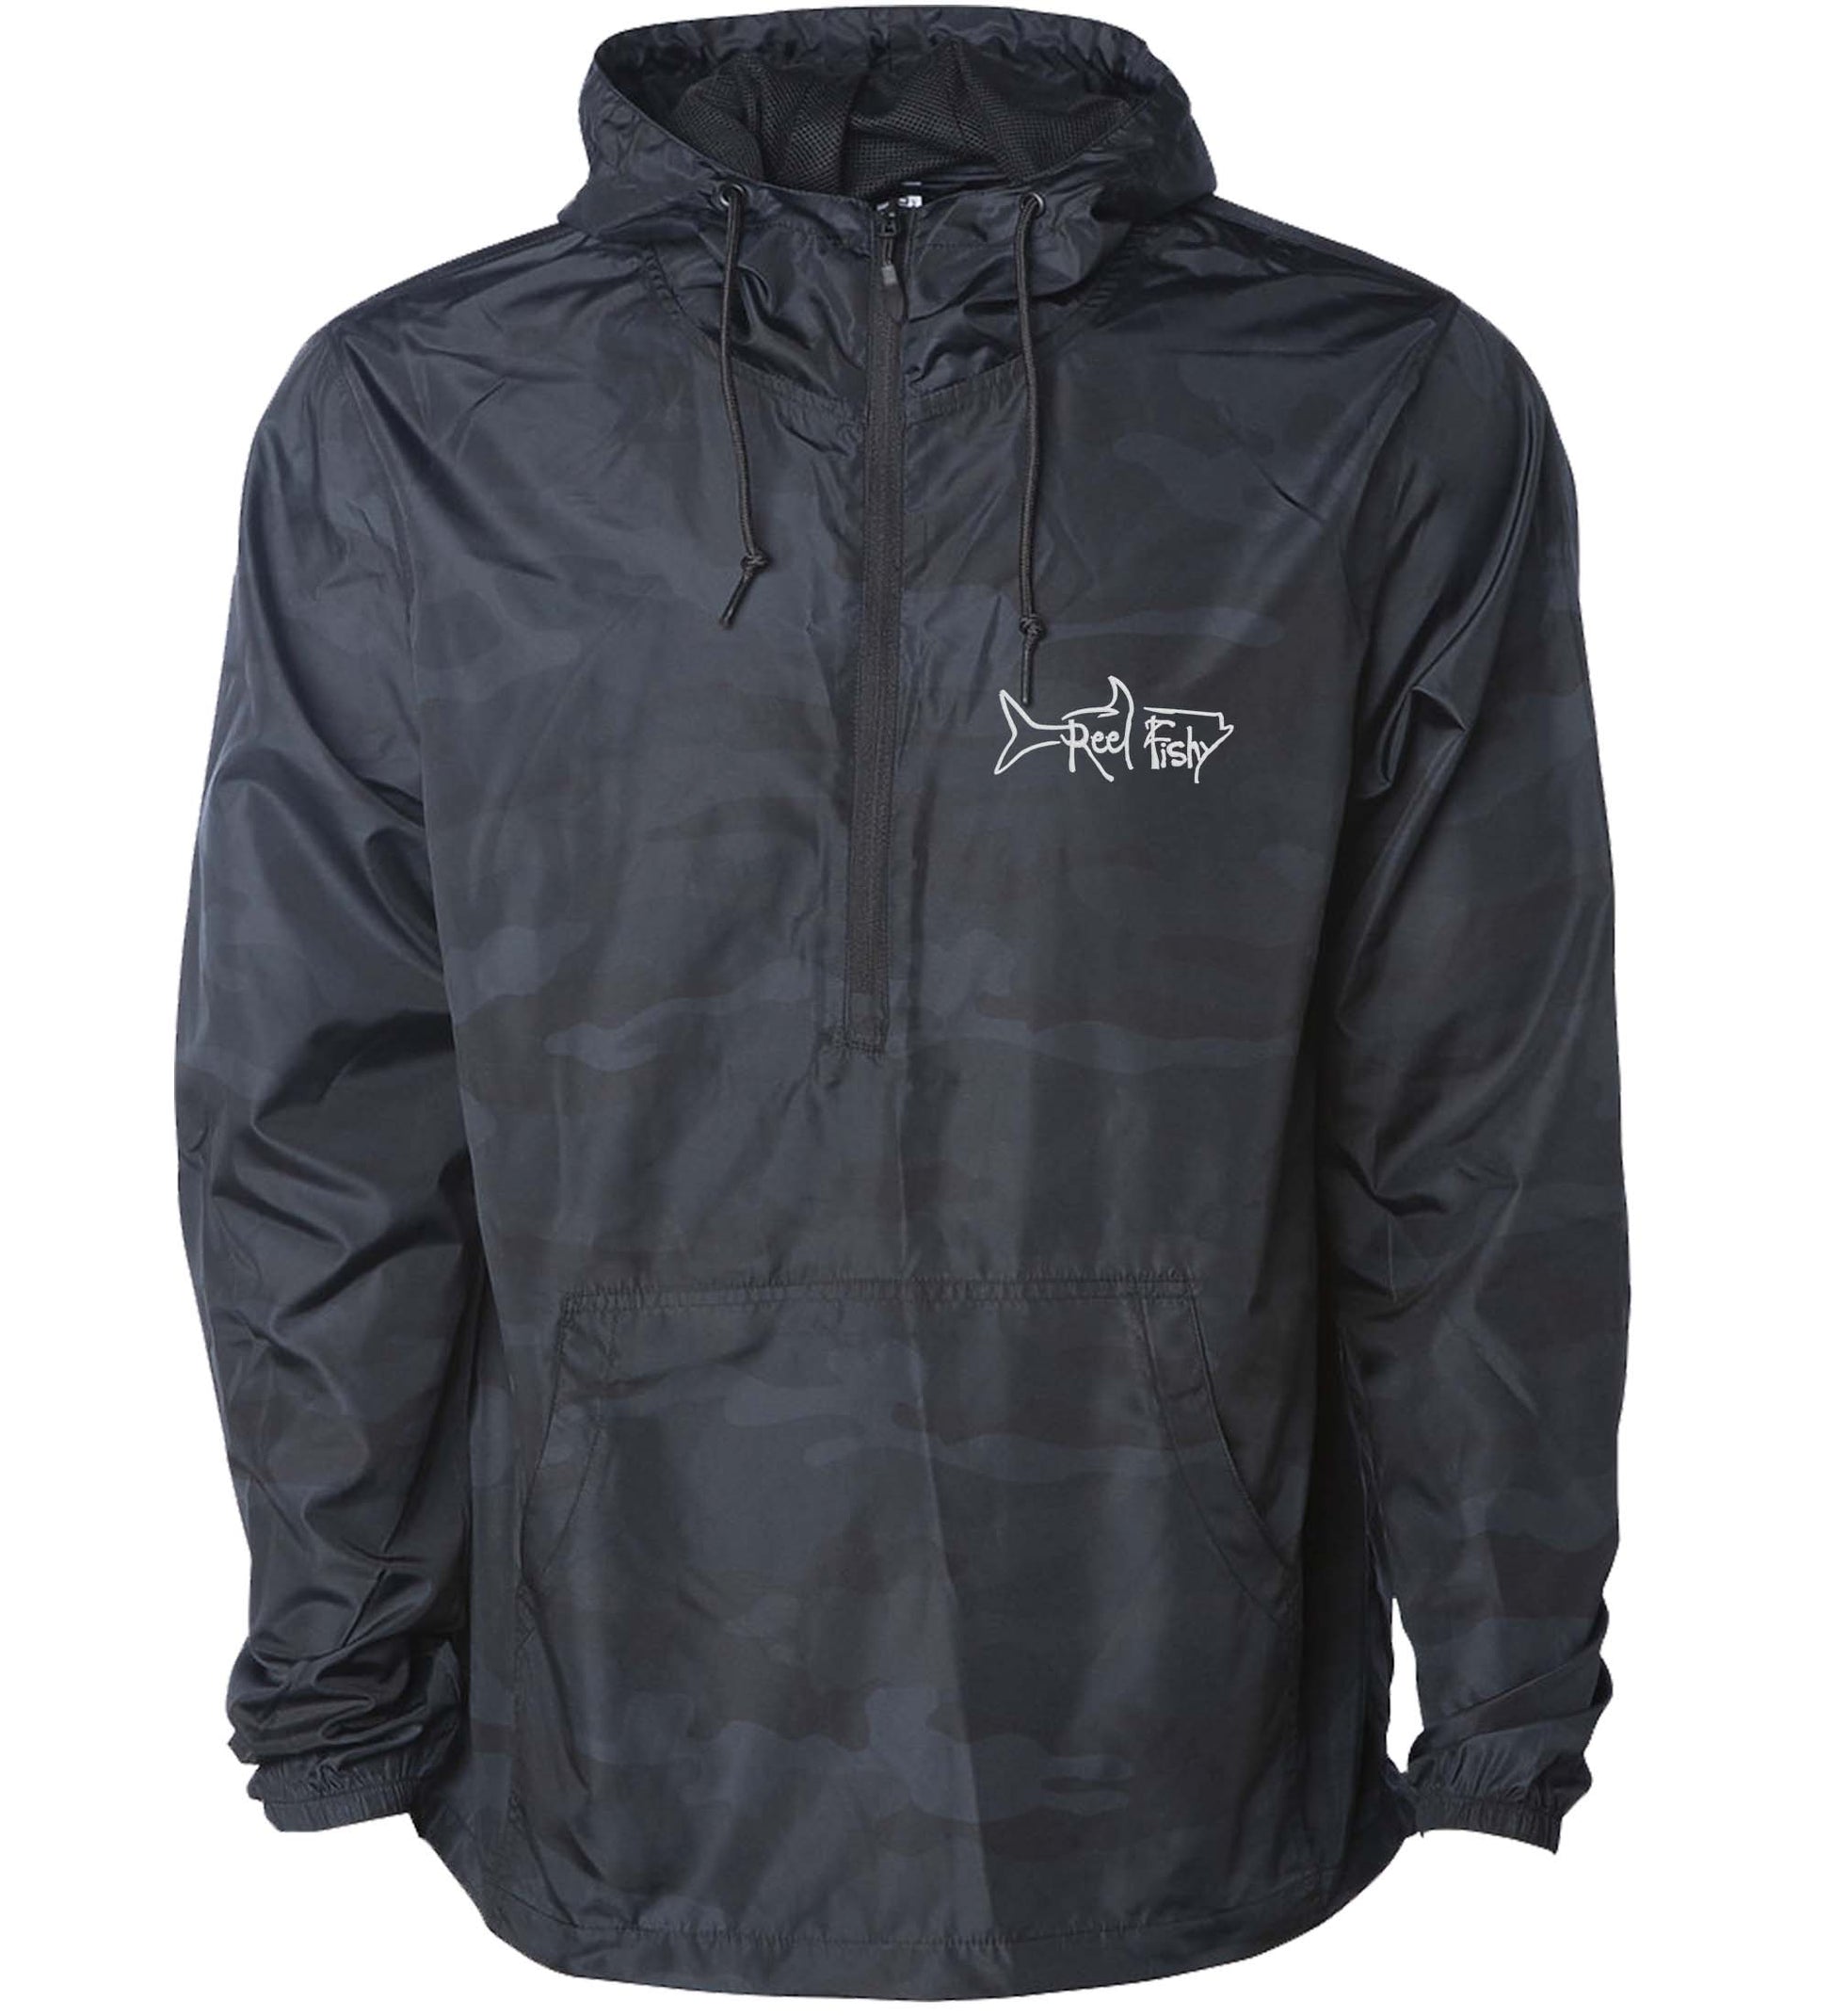 1/2 Zip Pullover Jacket in Black Camo color - Reel Fishy Apparel